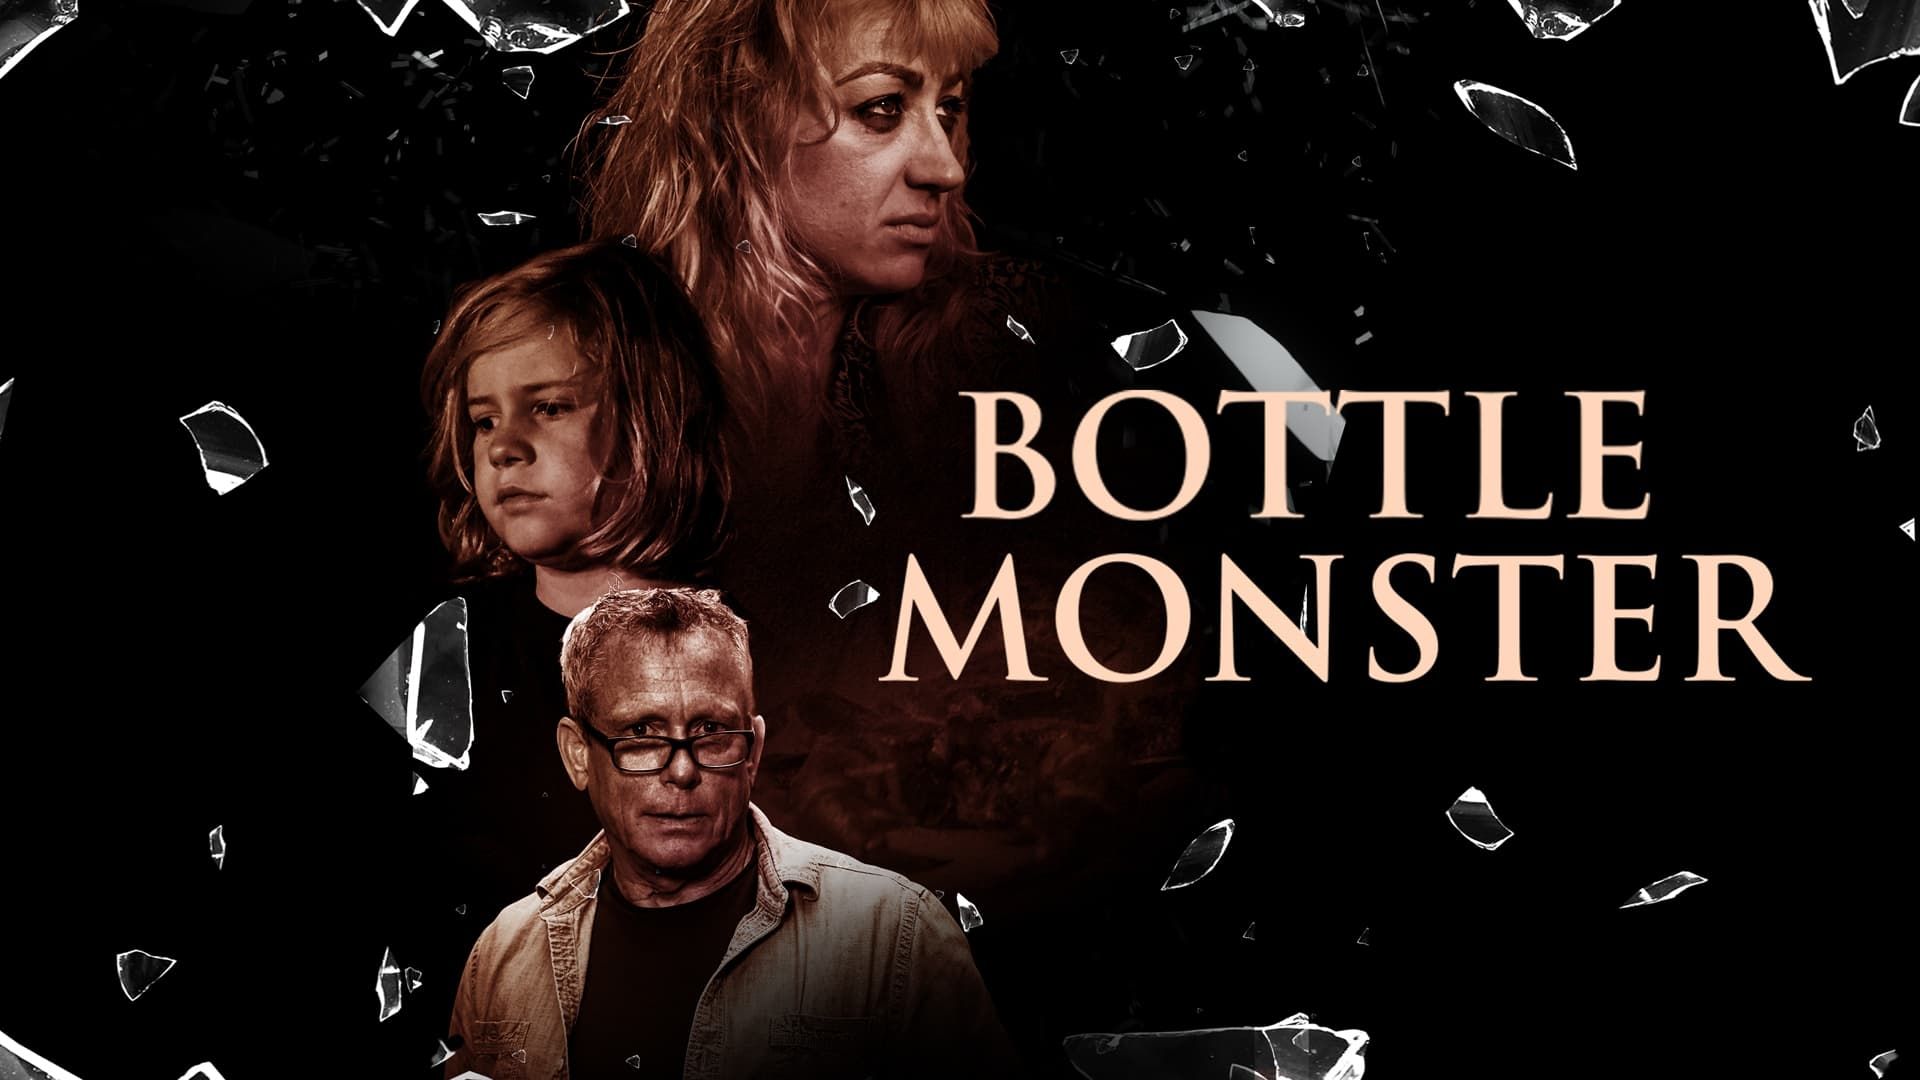 Bottle Monster background